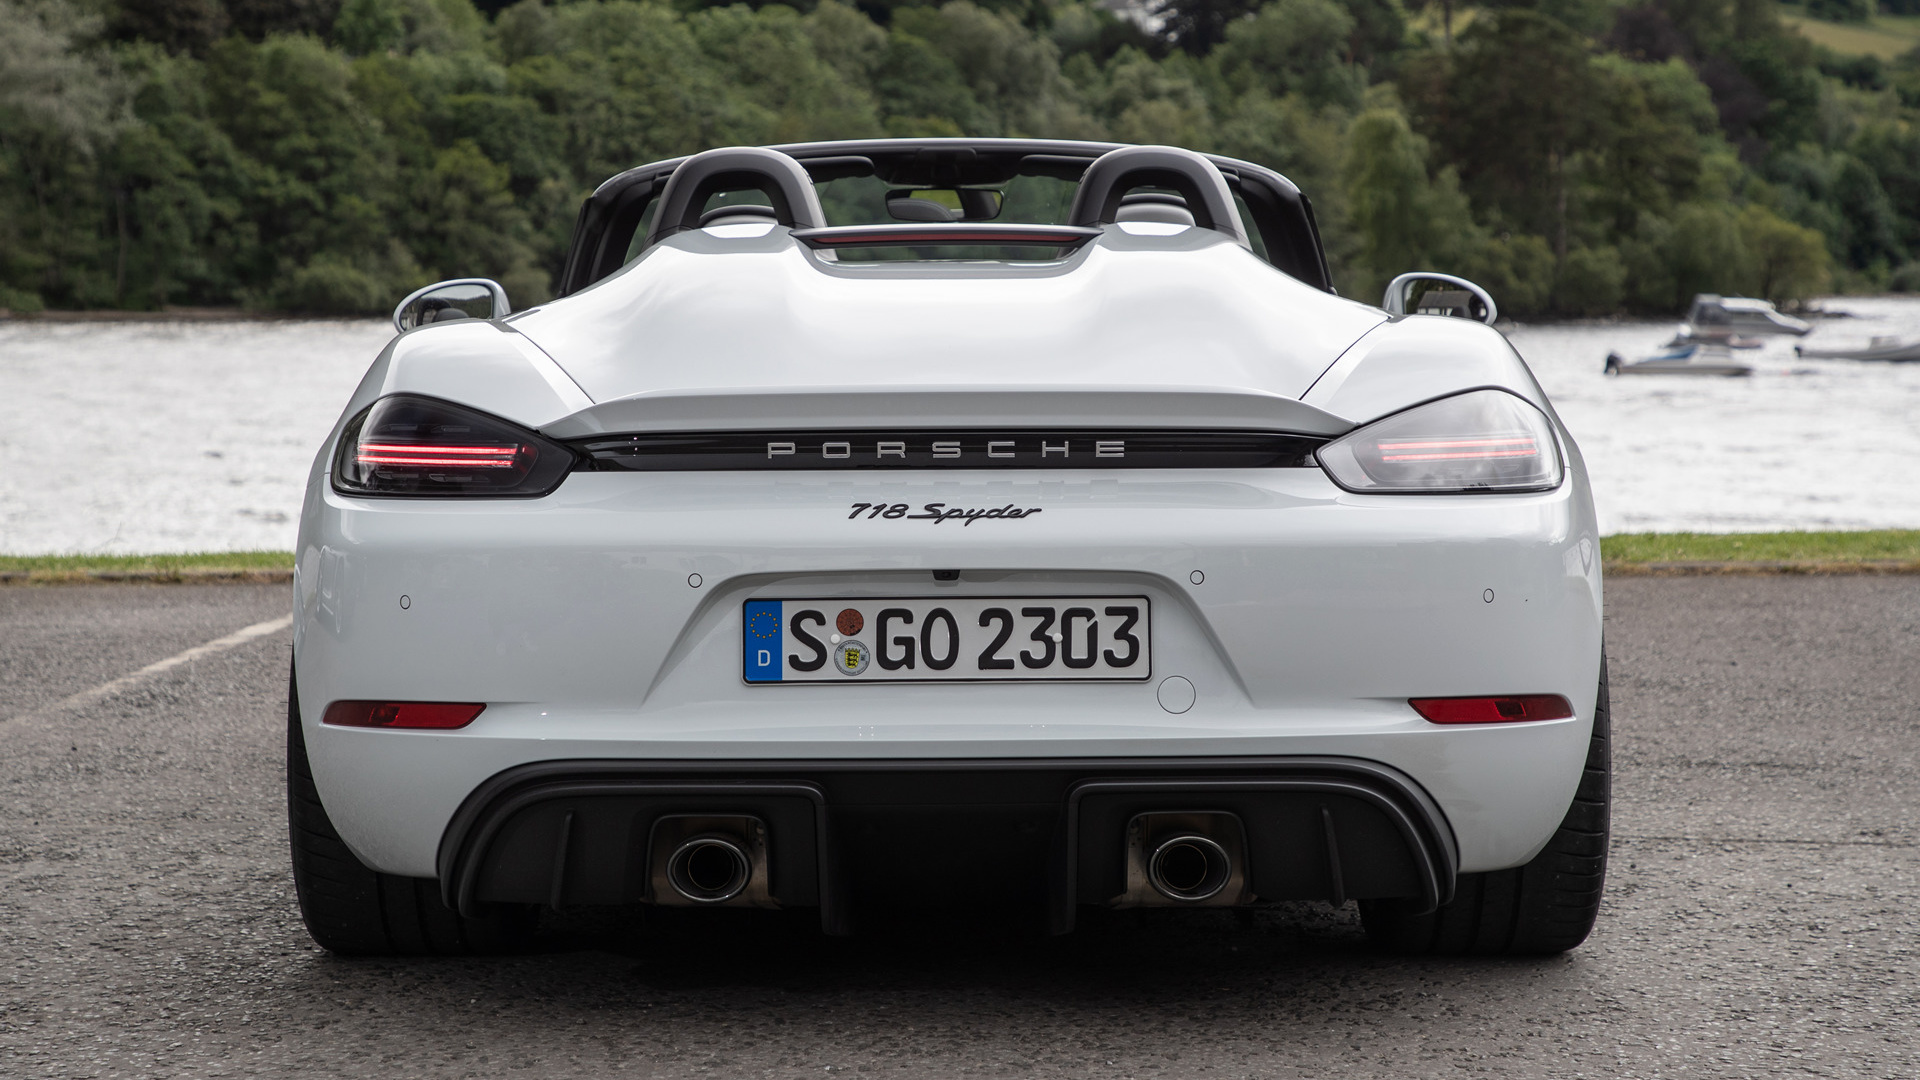 Download mobile wallpaper Porsche, Car, Convertible, Supercar, Vehicles, Silver Car, Porsche 718 Spyder for free.